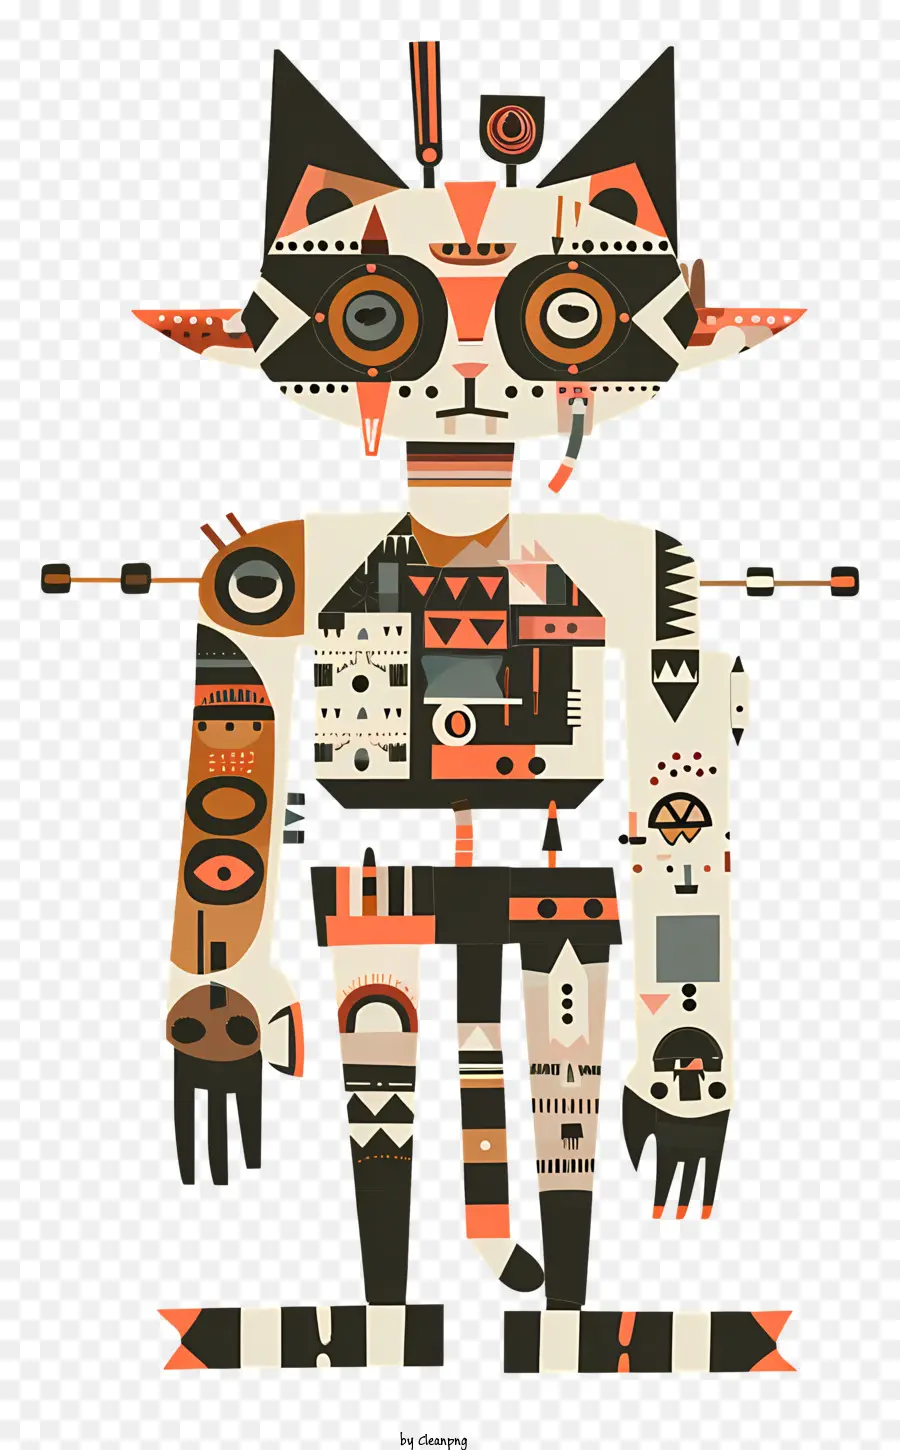 Hình ảnh công nghệ robot trí tuệ nhân tạo khoa học viễn tưởng - Robot với mặt, cánh tay, thiết bị ngực, chân